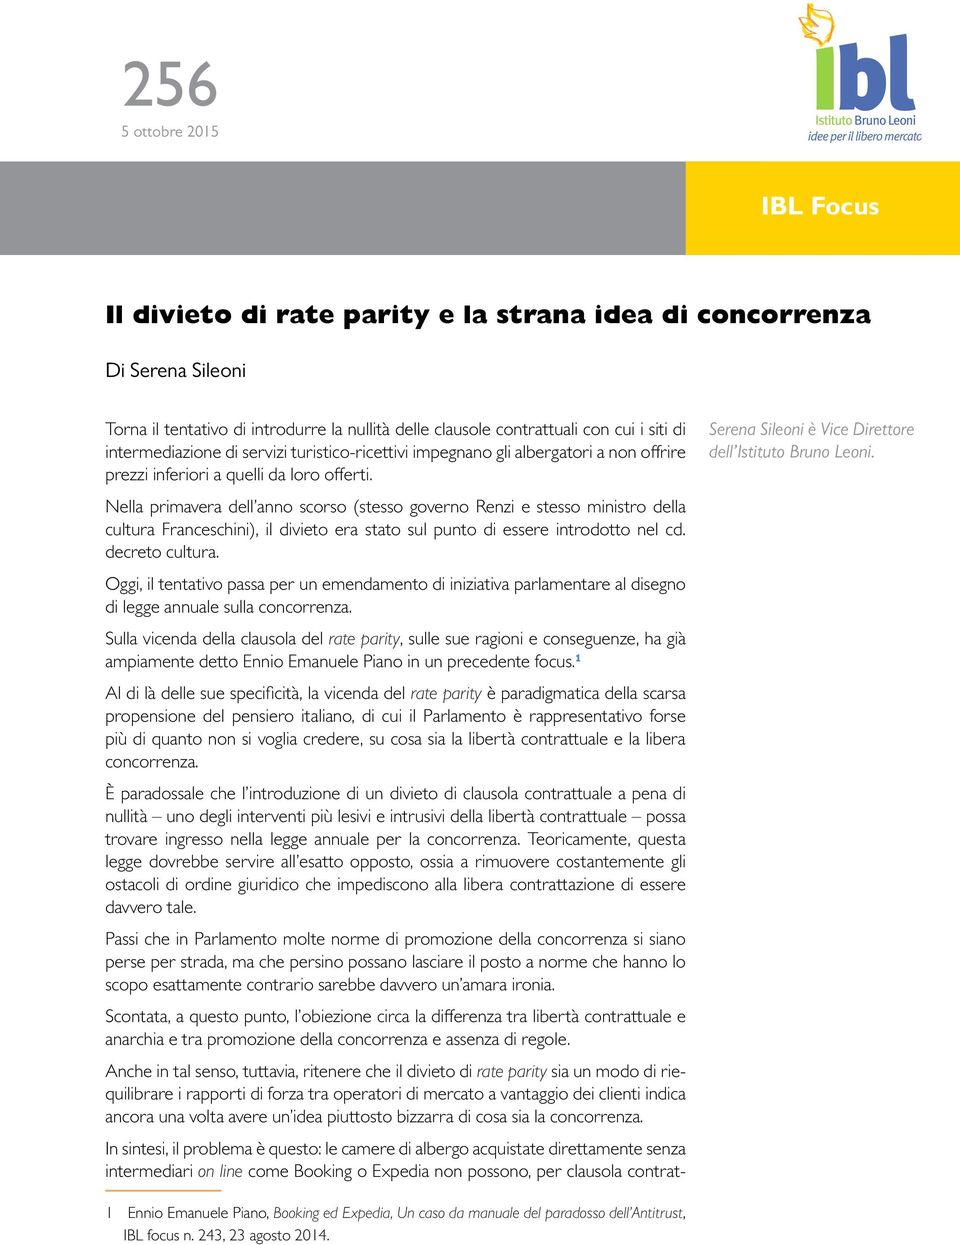 Nella primavera dell anno scorso (stesso governo Renzi e stesso ministro della cultura Franceschini), il divieto era stato sul punto di essere introdotto nel cd. decreto cultura.